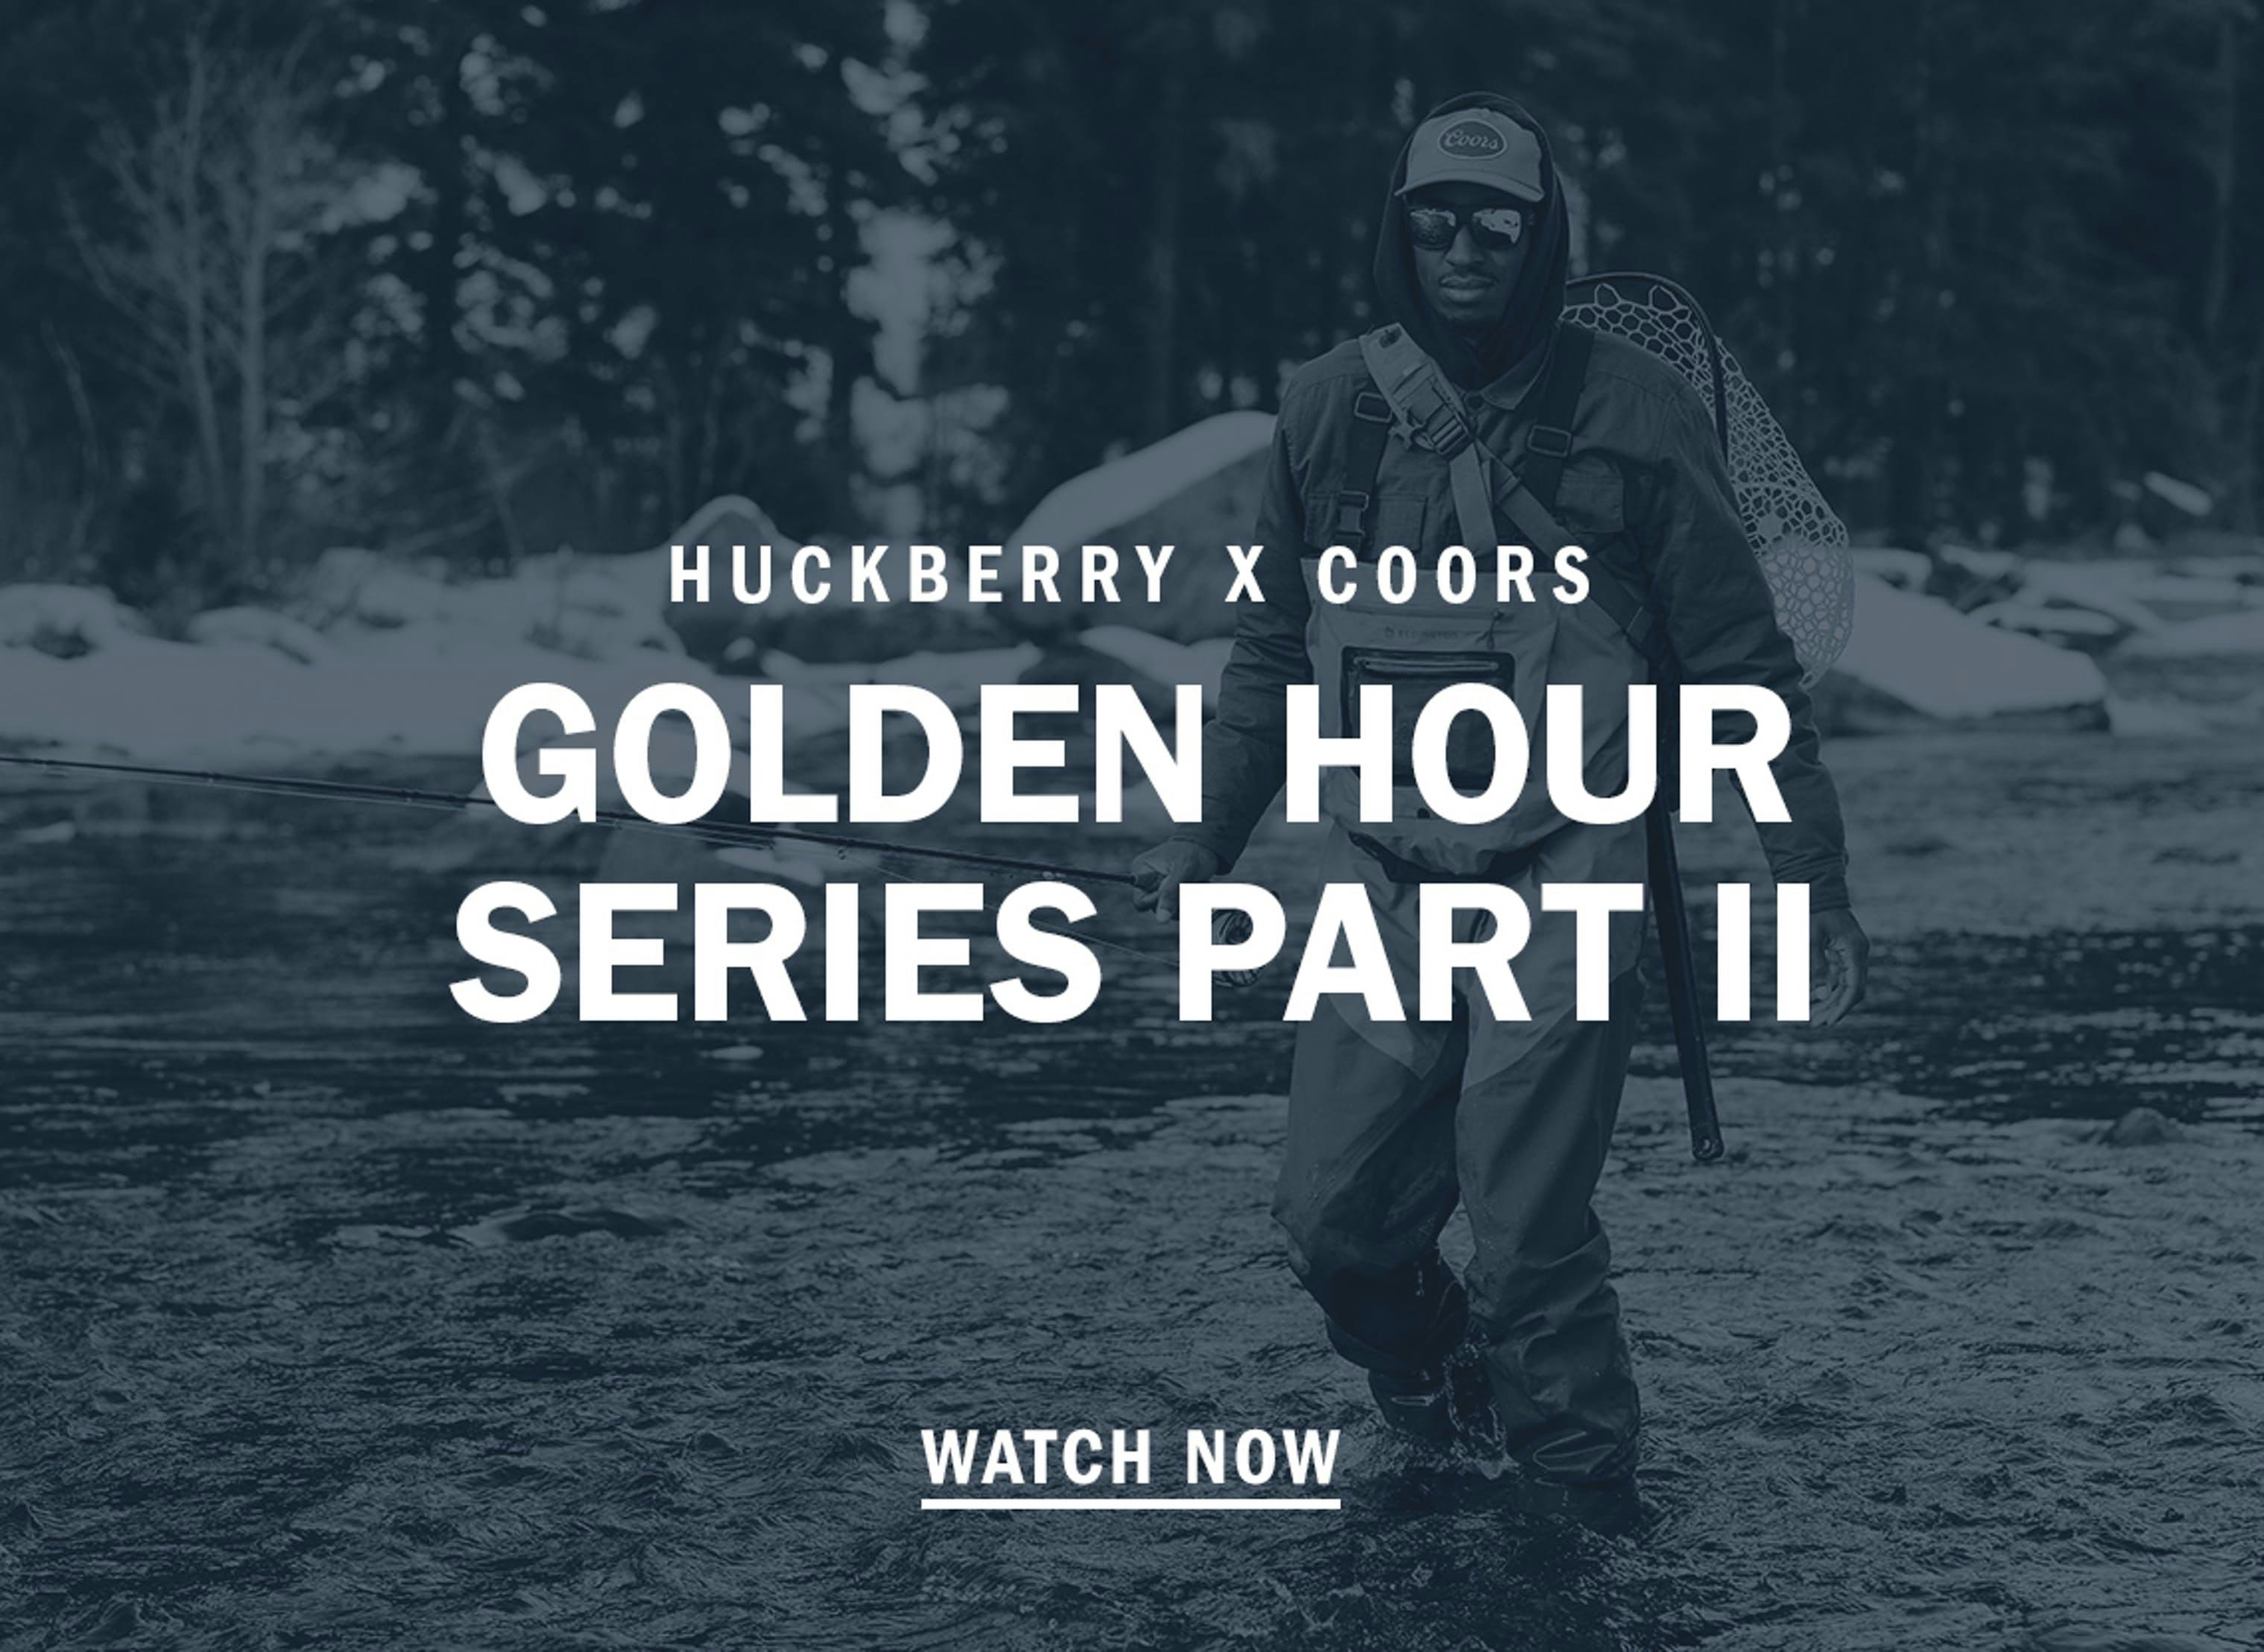 Golden Hour Series Part II